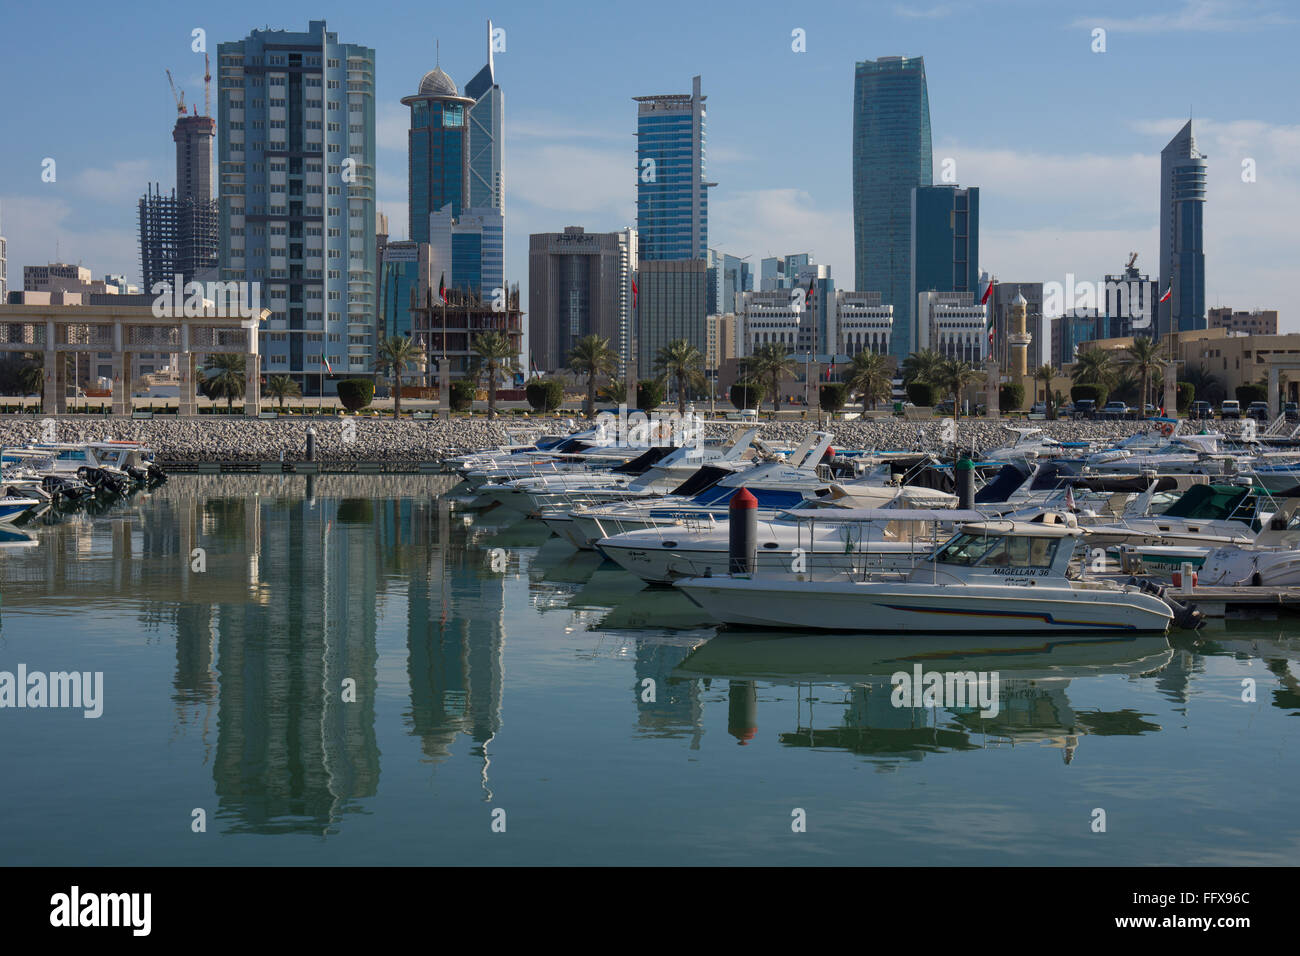 Koweït City marina au 15/06 avec cityscape derrière Banque D'Images